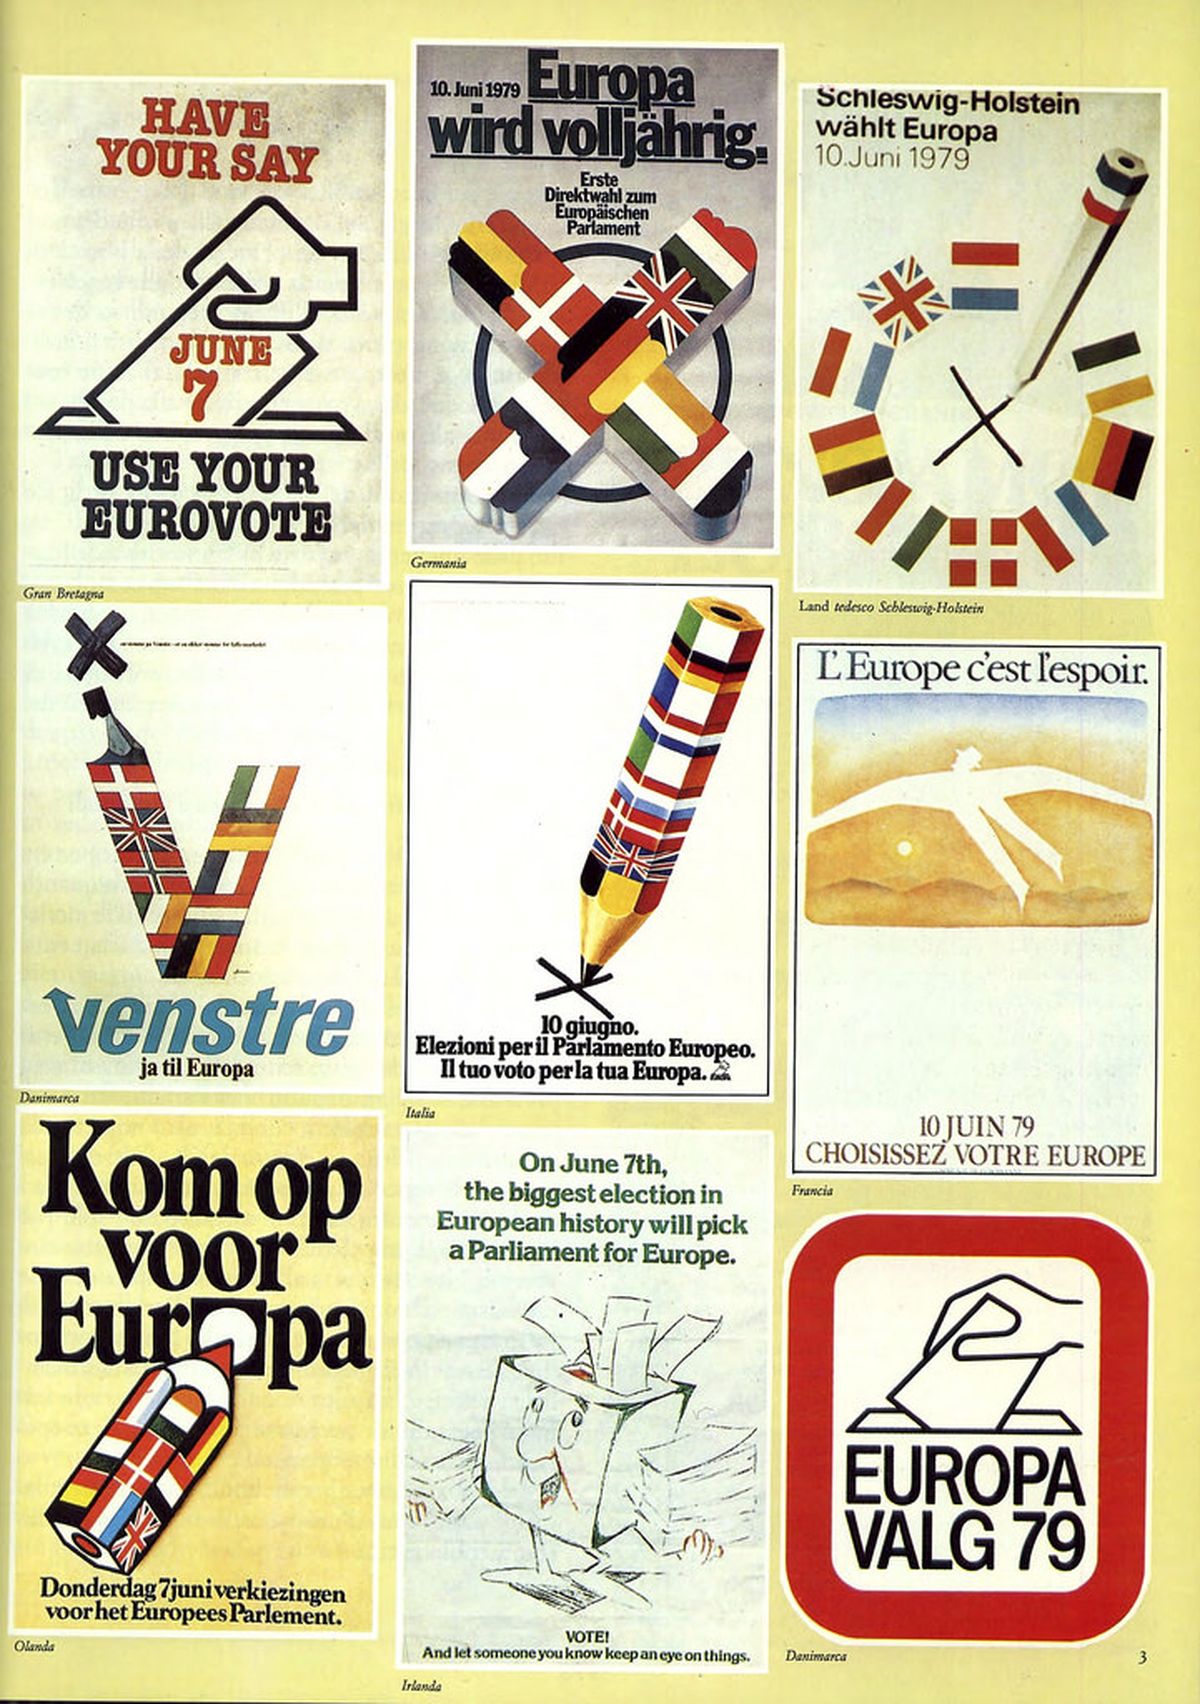 Рекламные объявления, призывающие к выборам в Европарламент в различных странах Европейского экономического сообщества в 1979 году.